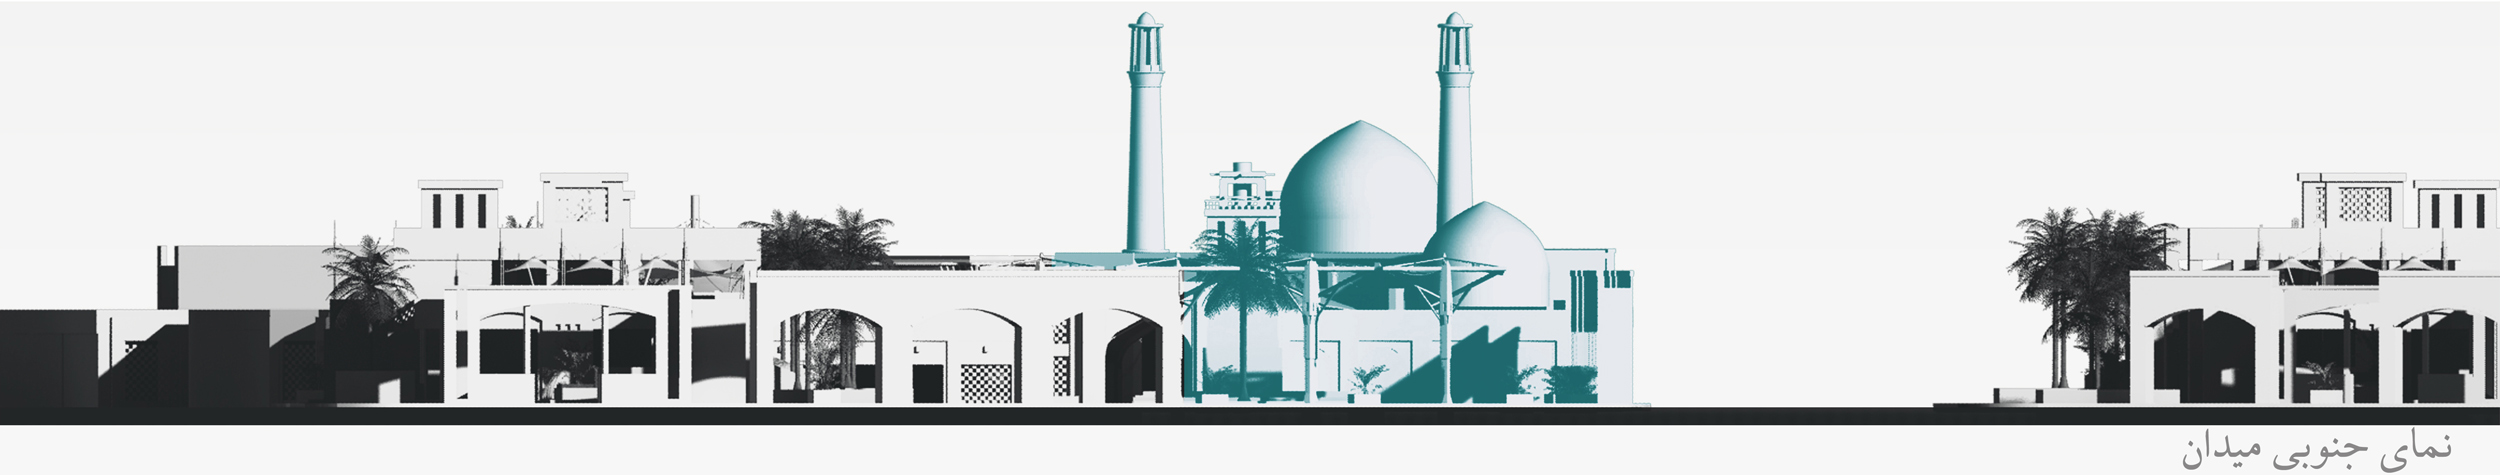 طرح ساماندهی بافت پیرامونی و توسعه مسجد جامع خرمشهر